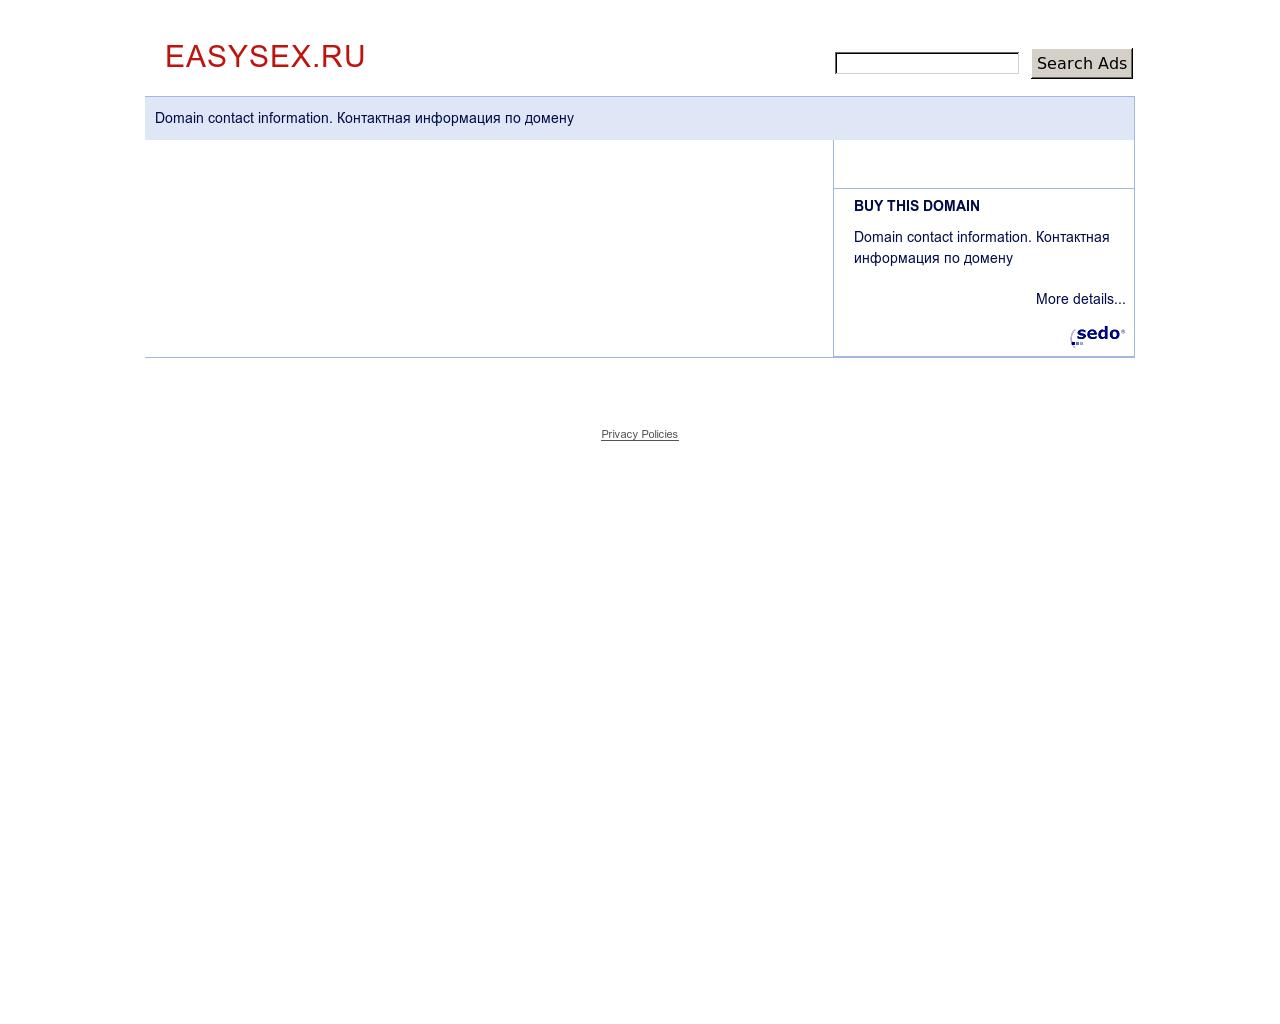 Изображение сайта easysex.ru в разрешении 1280x1024